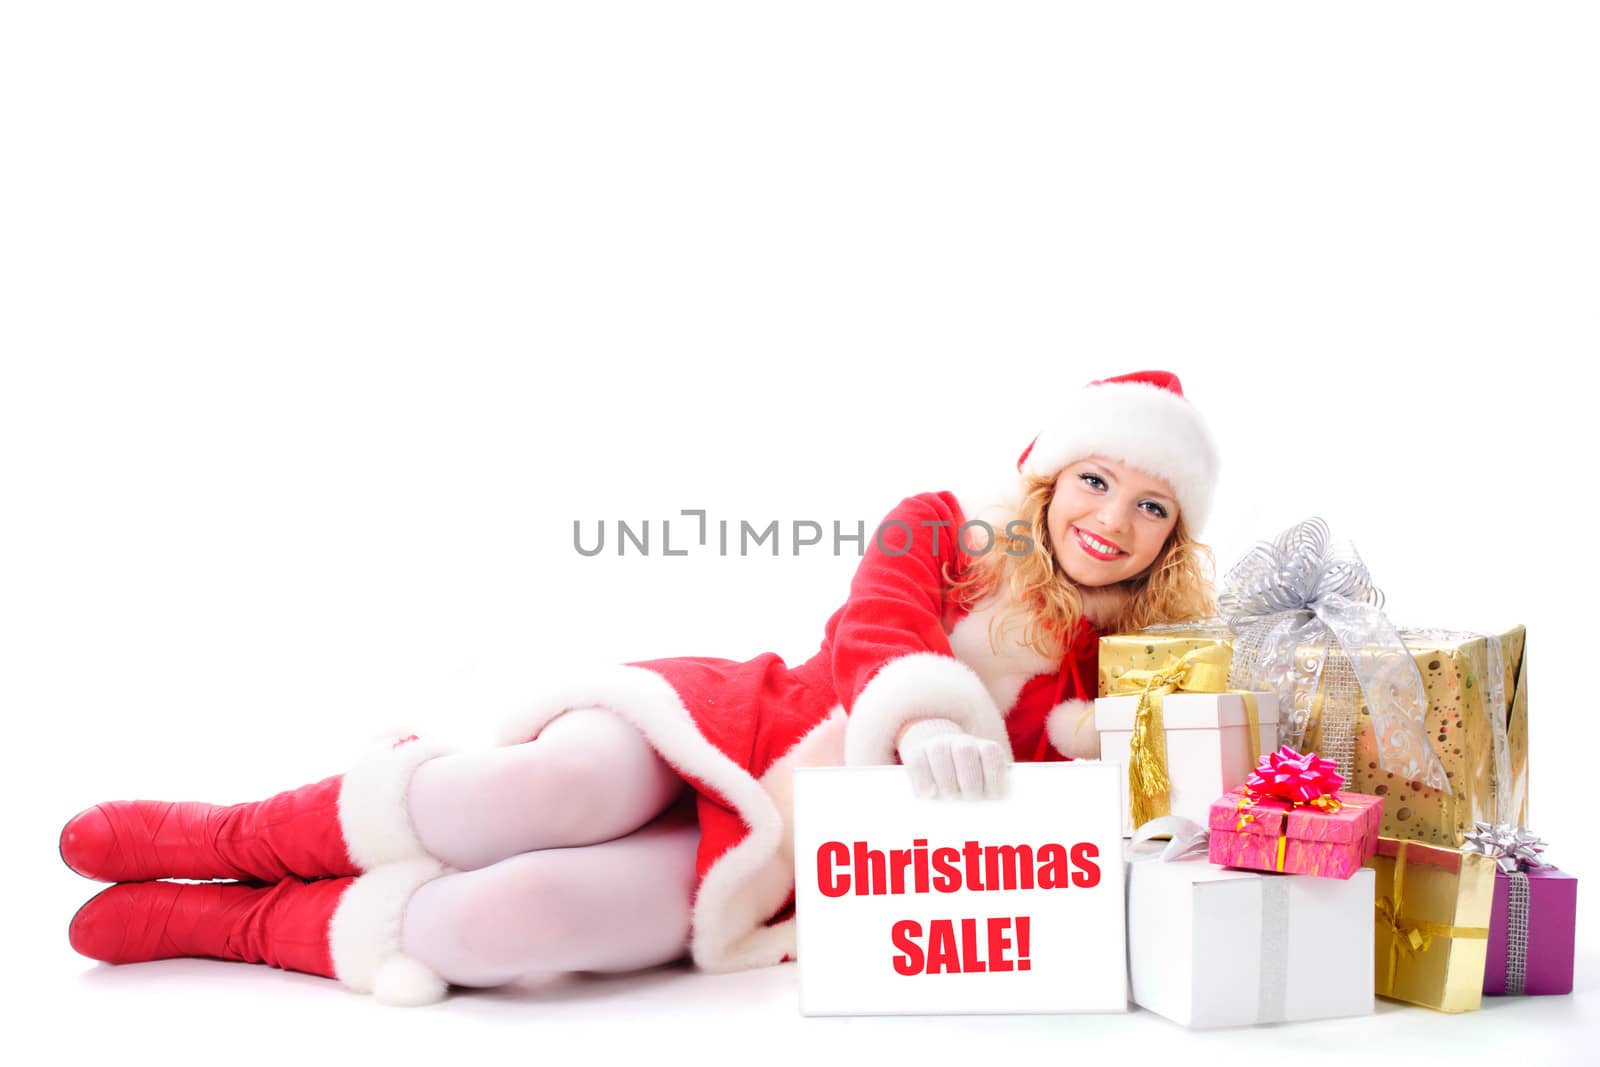  Christmas santa girl with placard "Christmas sale"